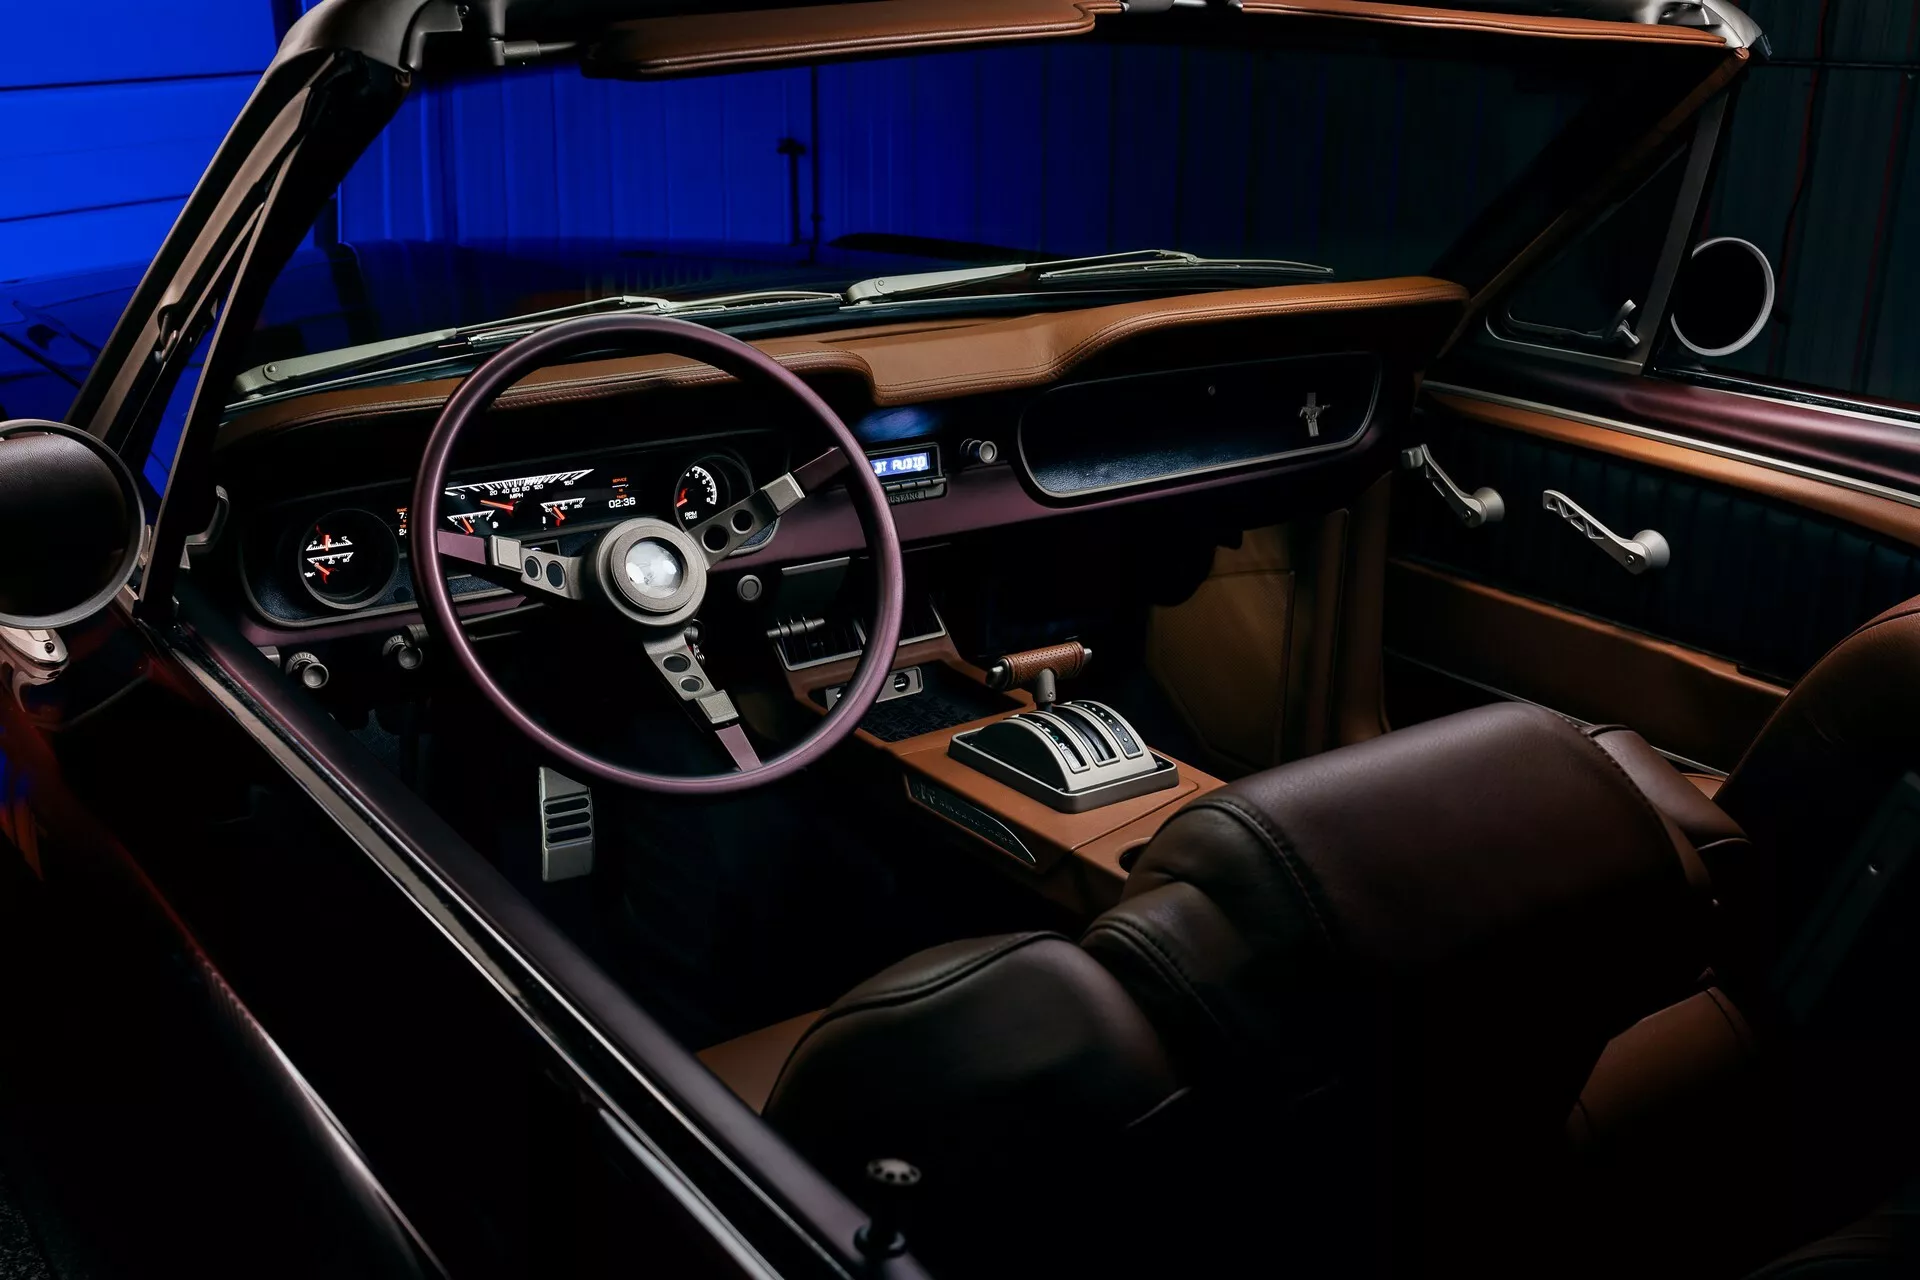 تدشين واحدة من أجمل سيارات فورد موستنج الكلاسيكية في معرض سيما الأمريكي بمحرك 8 سلندر عصري 8